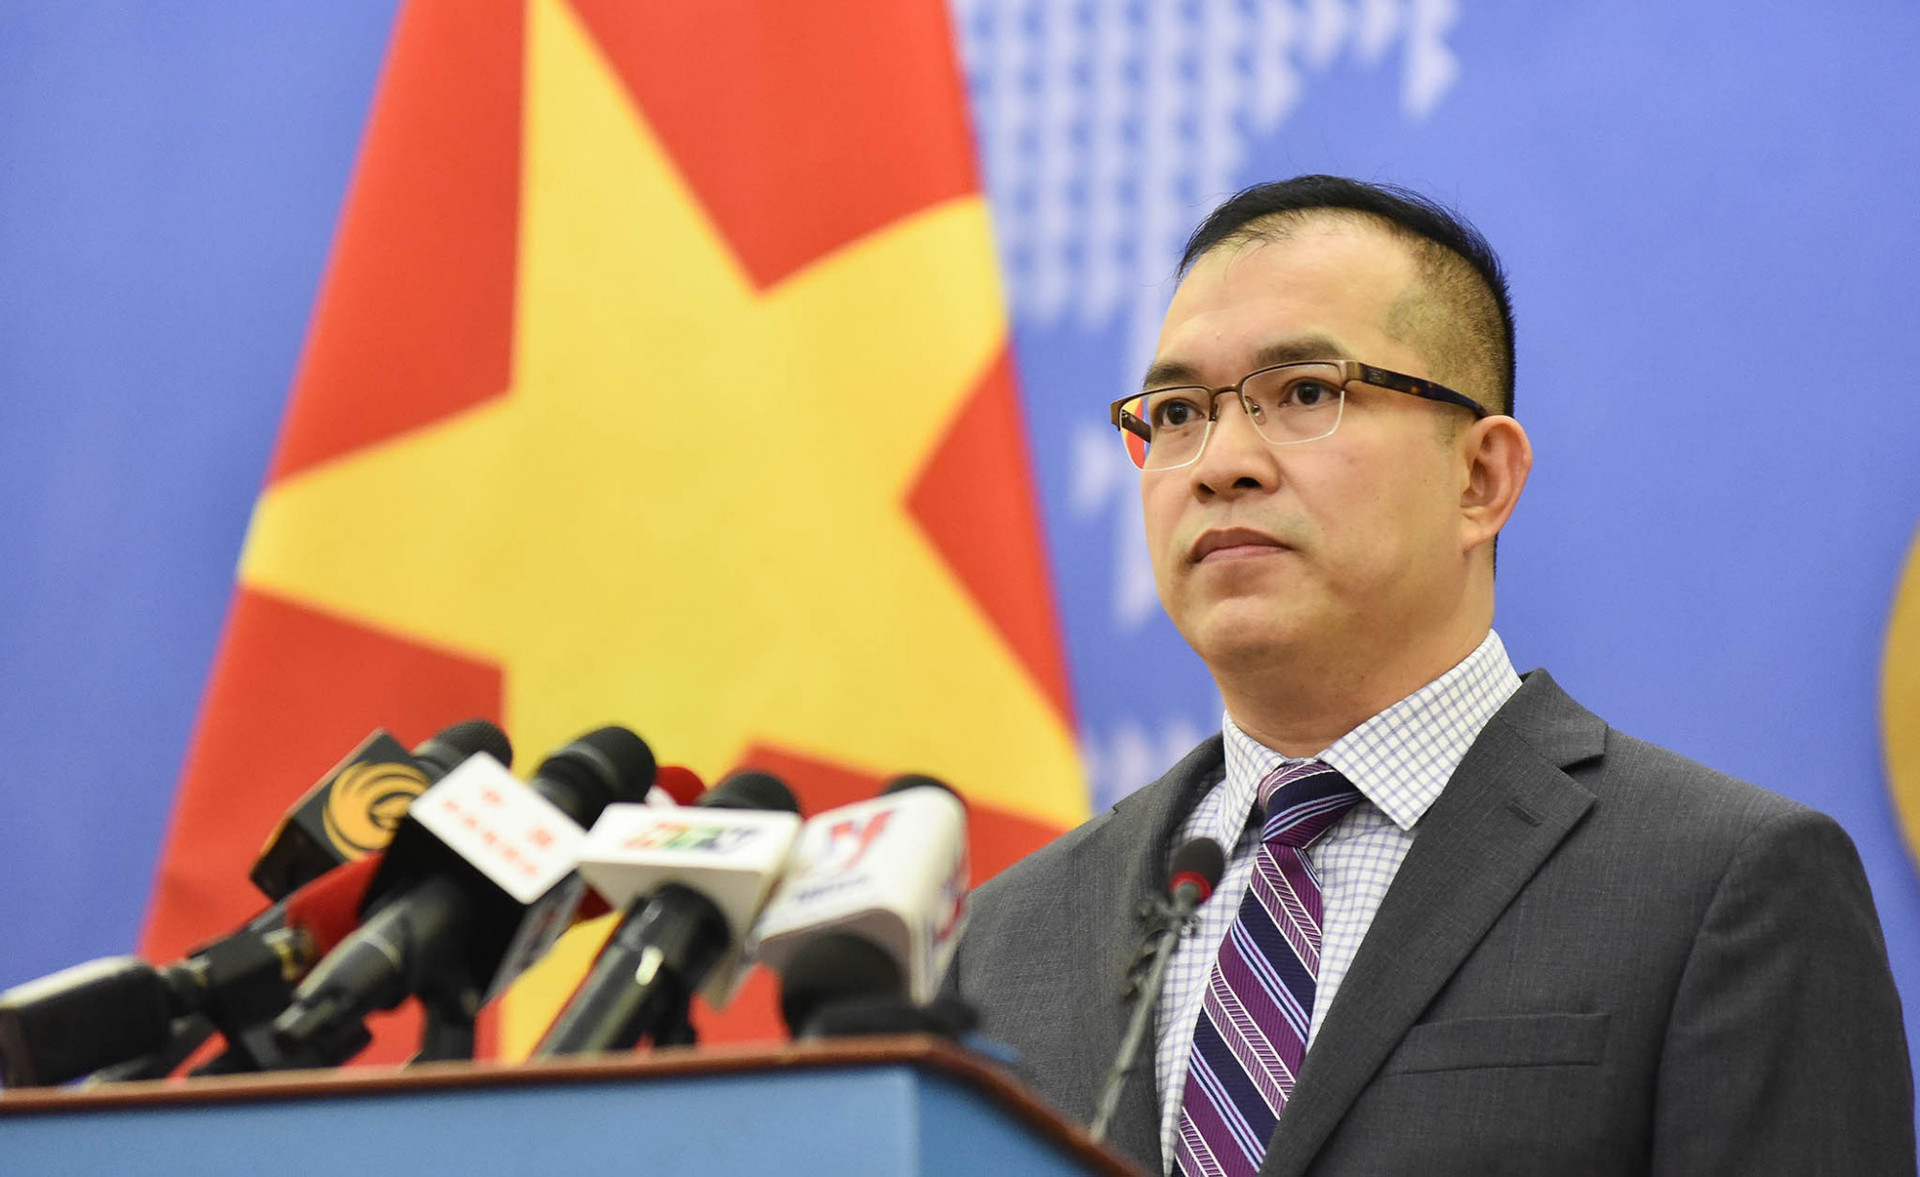 Yêu cầu các bên liên quan tôn trọng chủ quyền của Việt Nam đối với quần đảo Trường Sa- Ảnh 1.